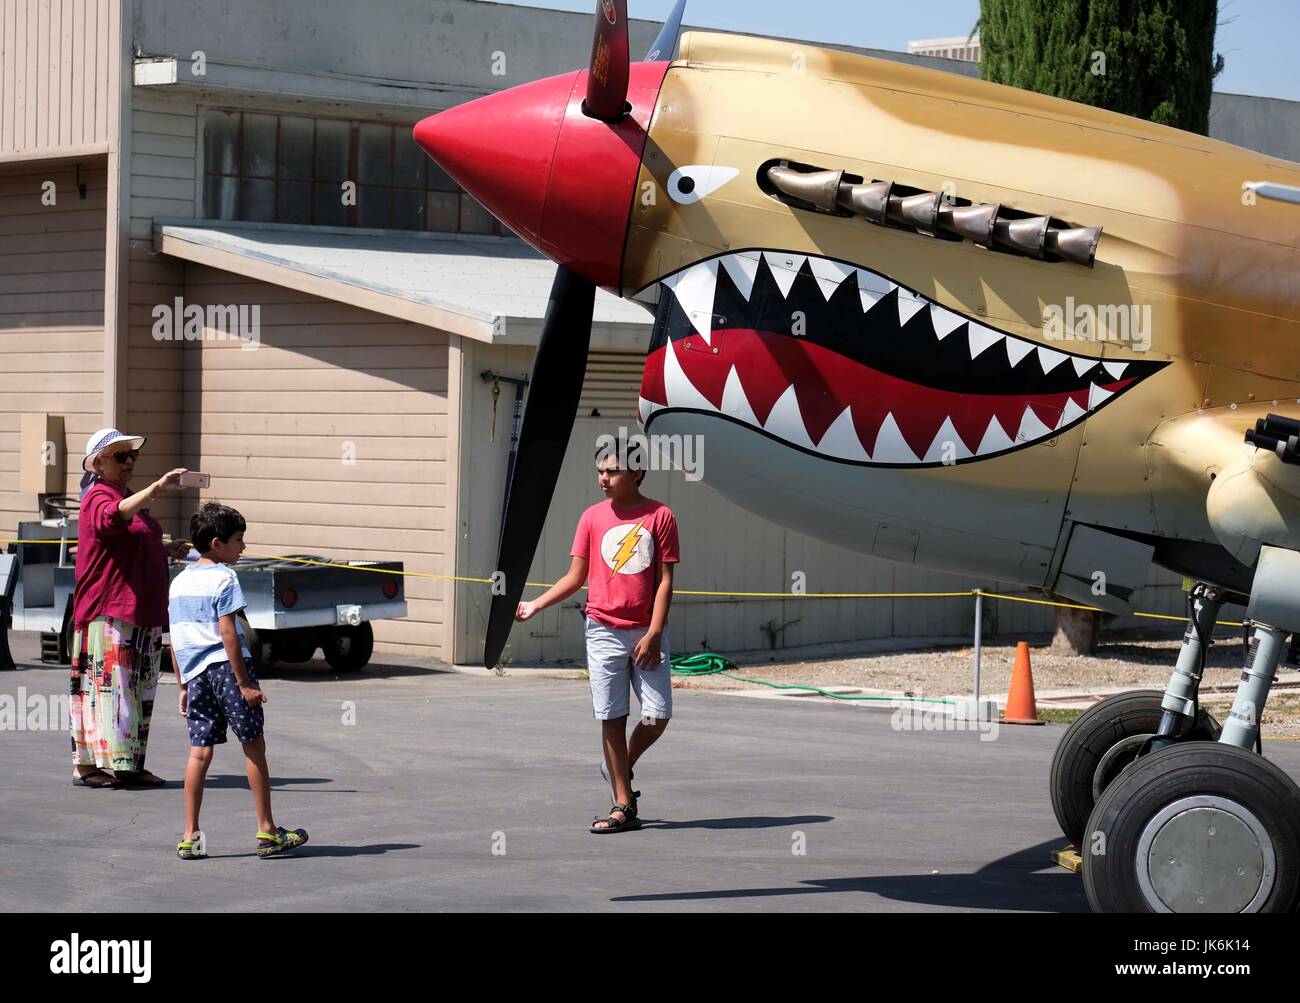 Californie, USA. 22 juillet, 2017. Personnes visitent le 'La Première Guerre mondiale et au début de l'avion' show à l'air Planes of Fame Museum à Chino de Californie, aux États-Unis, le 22 juillet 2017. Credit : Zhao Hanrong/Xinhua/Alamy Live News Banque D'Images